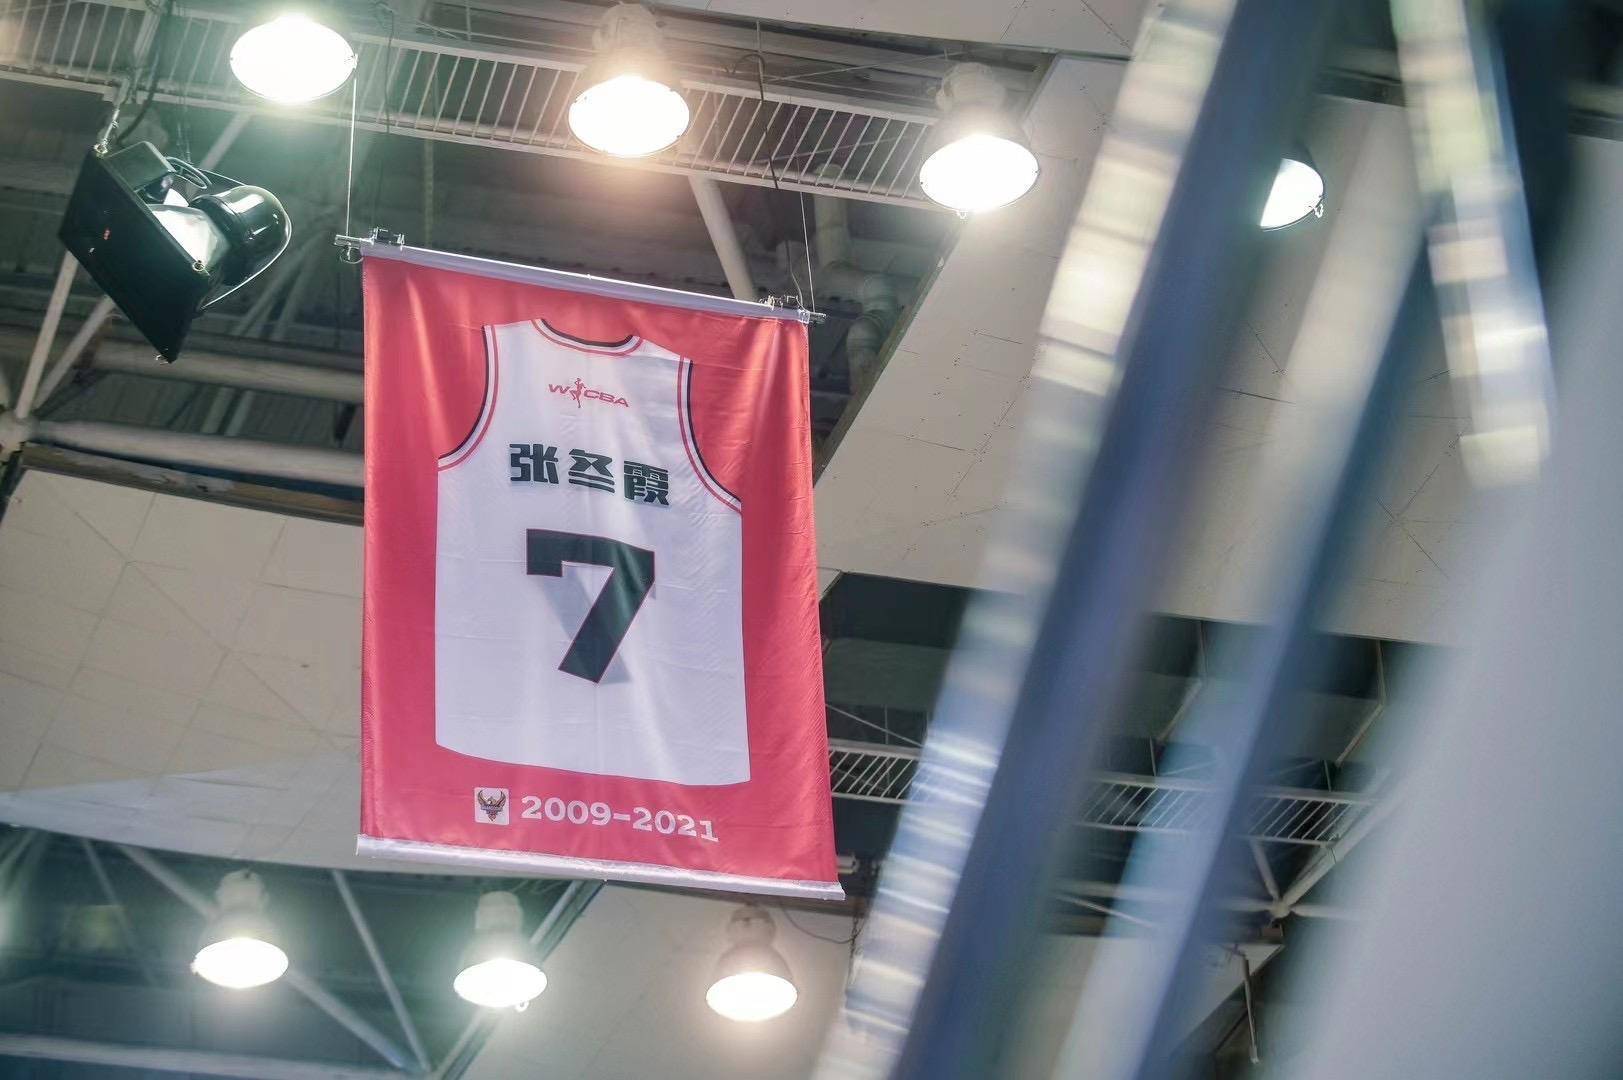 【WCBA】广东女篮新赛季主场开门红，为老队长张冬霞举办退役仪式